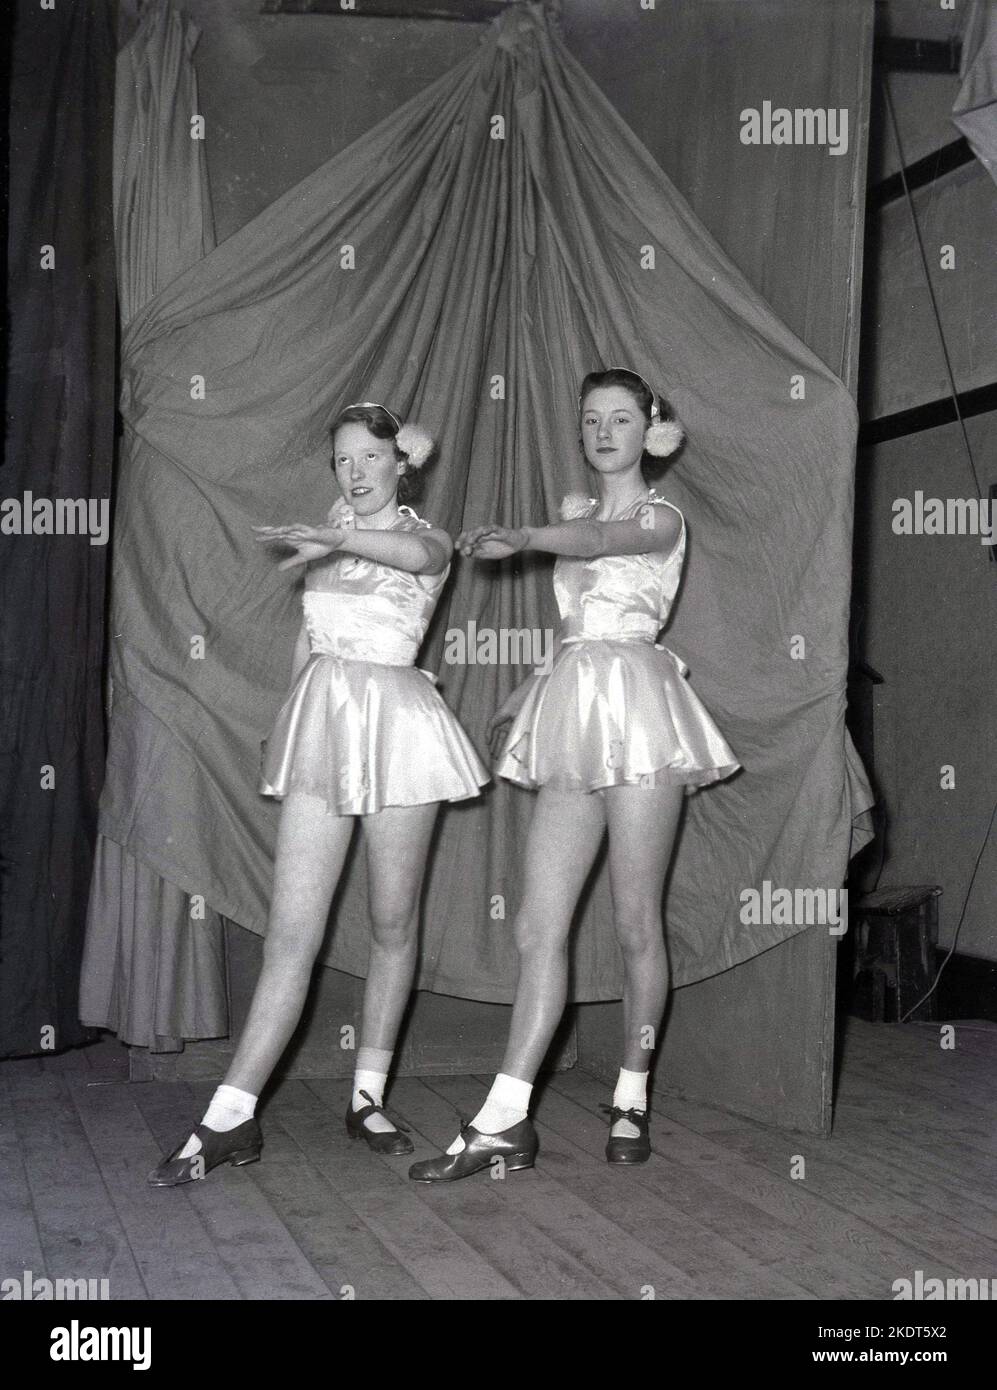 1955, storico, due ragazze adolescenti più grandi, ballerini, che appaiono nella pantomina d'inverno, Robin Hood, sul palco, nei loro abiti di abiti corti calze boblle e scarpe da ballo, in posa per una foto, Leeds, Inghilterra, UK. Foto Stock